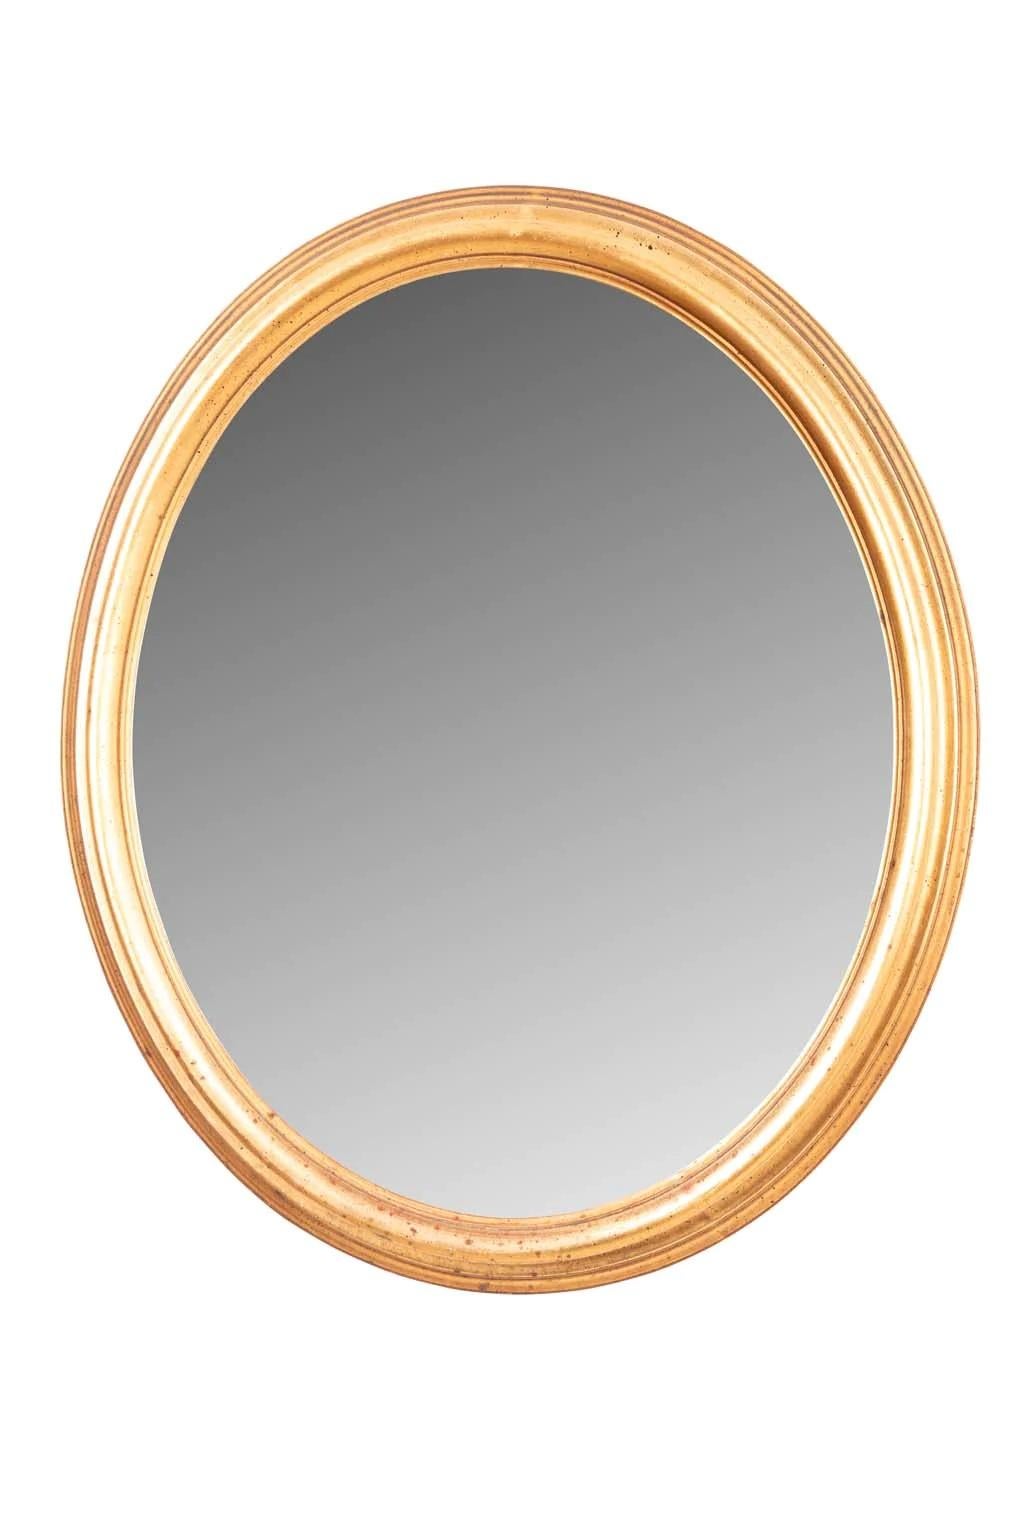 Italian Gilt Wood Mirror For Sale 1